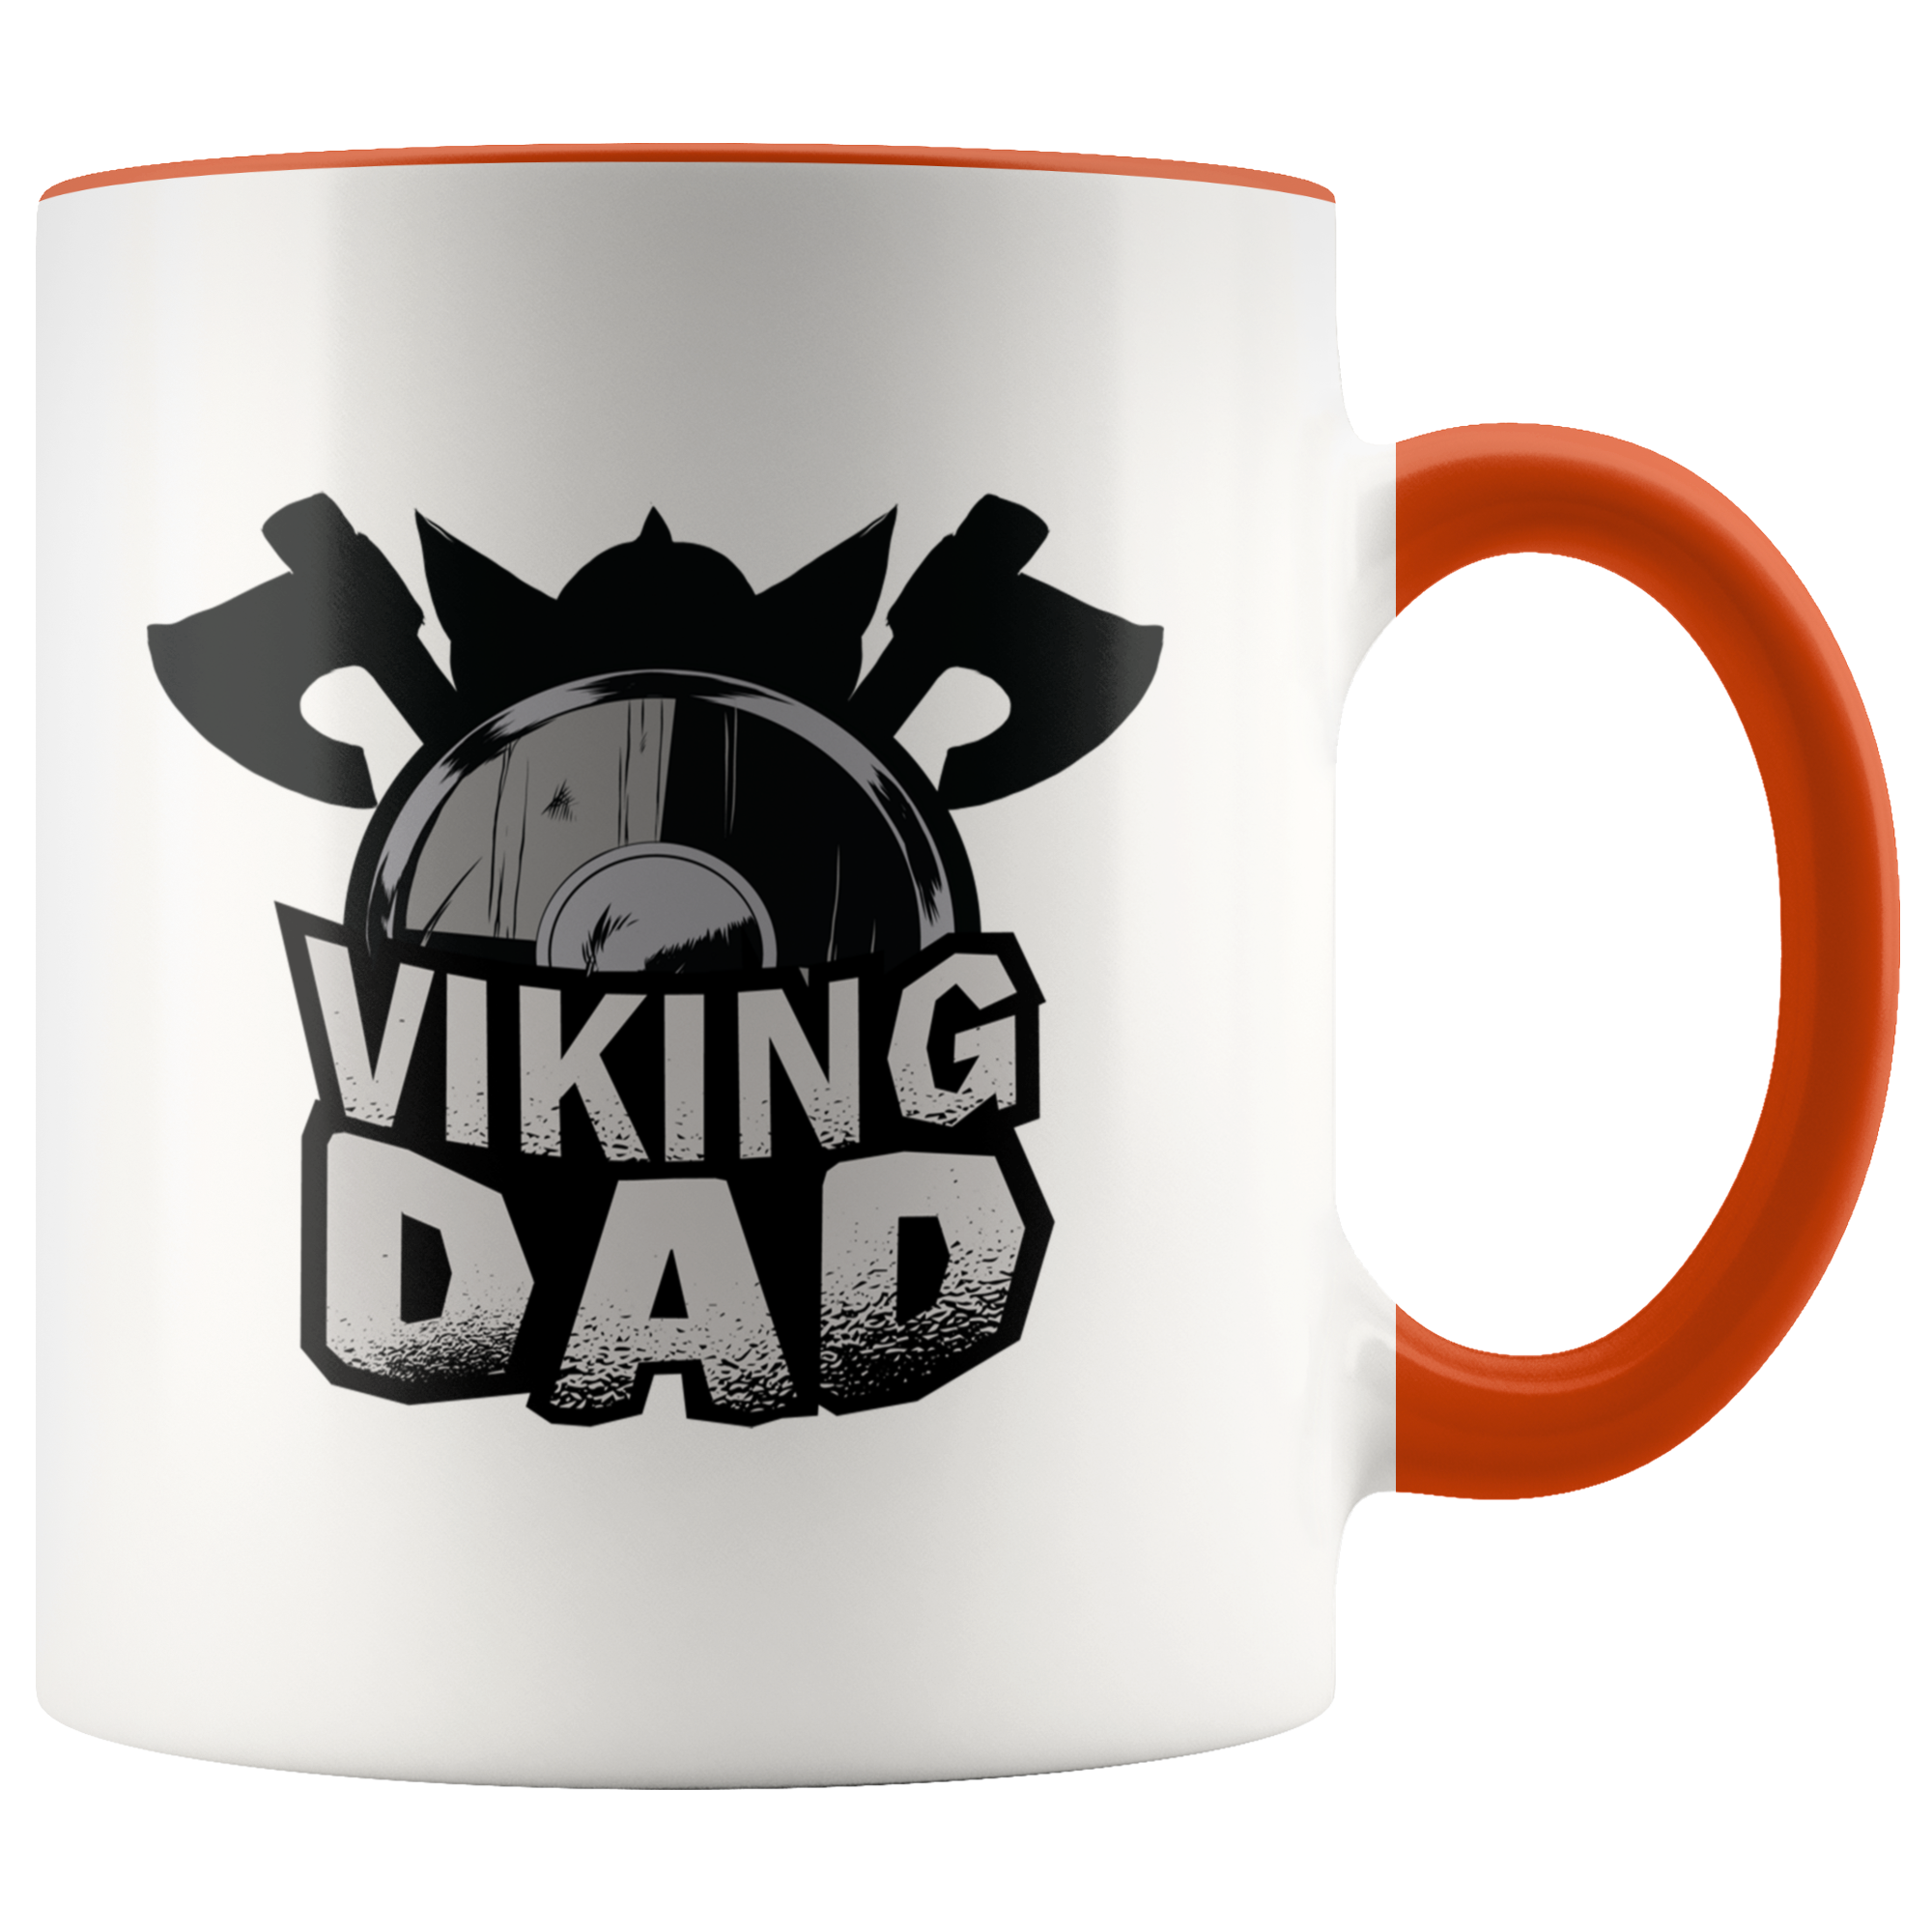 Viking Dad Mug